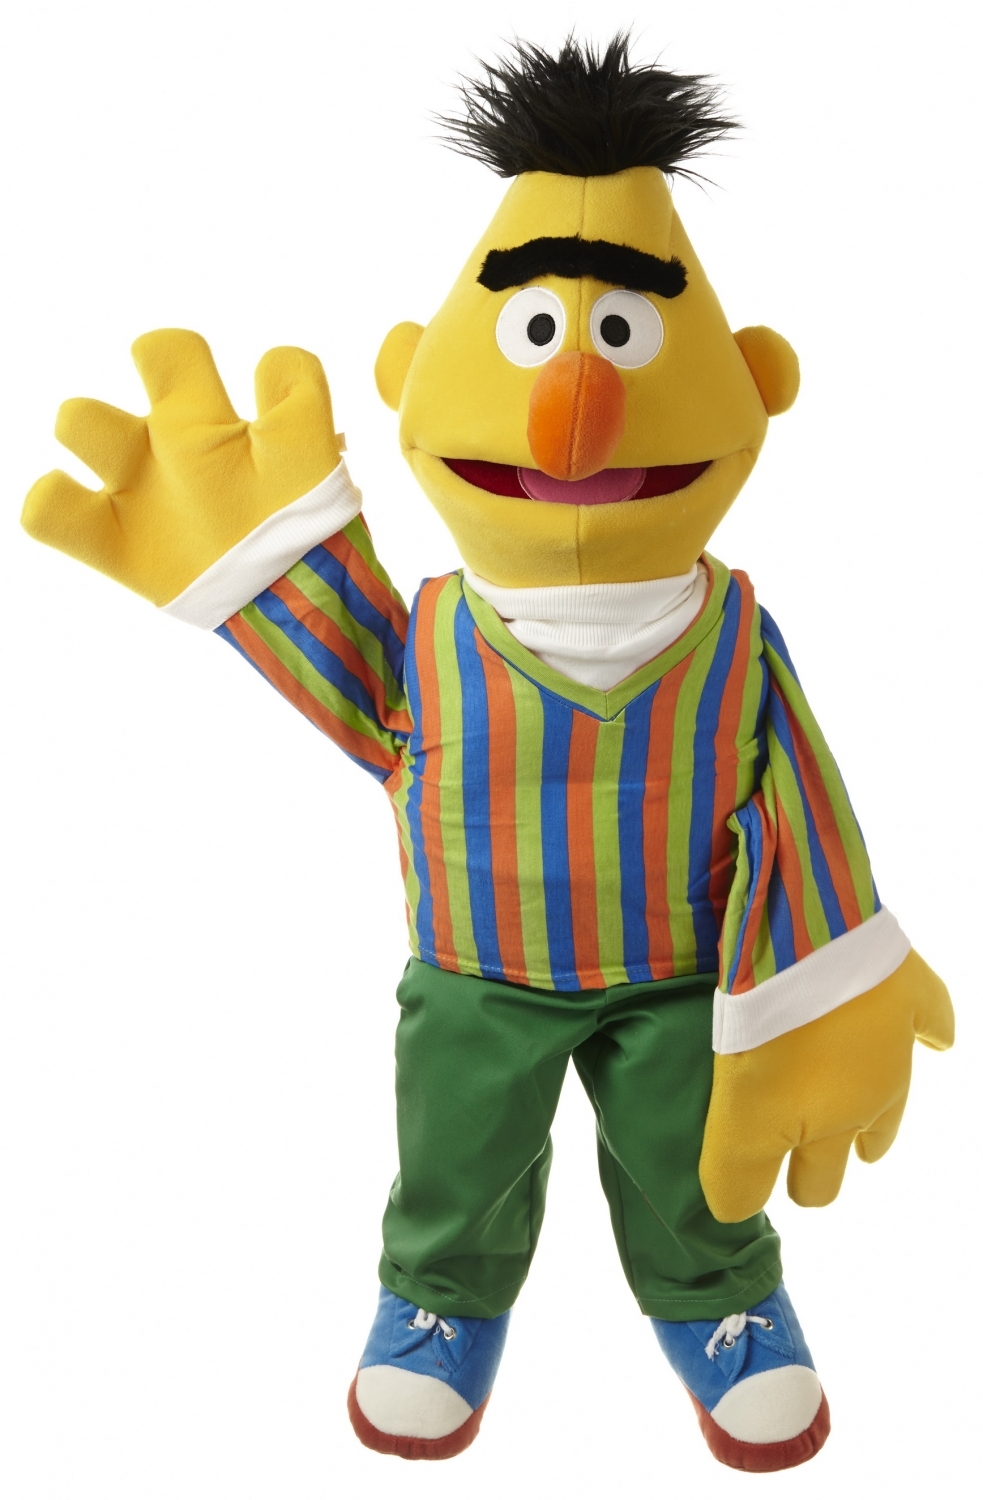 Dwaal Circulaire moord Bert en Ernie handpop, Bert van Sesamstraat, Living Puppets handpop Bert